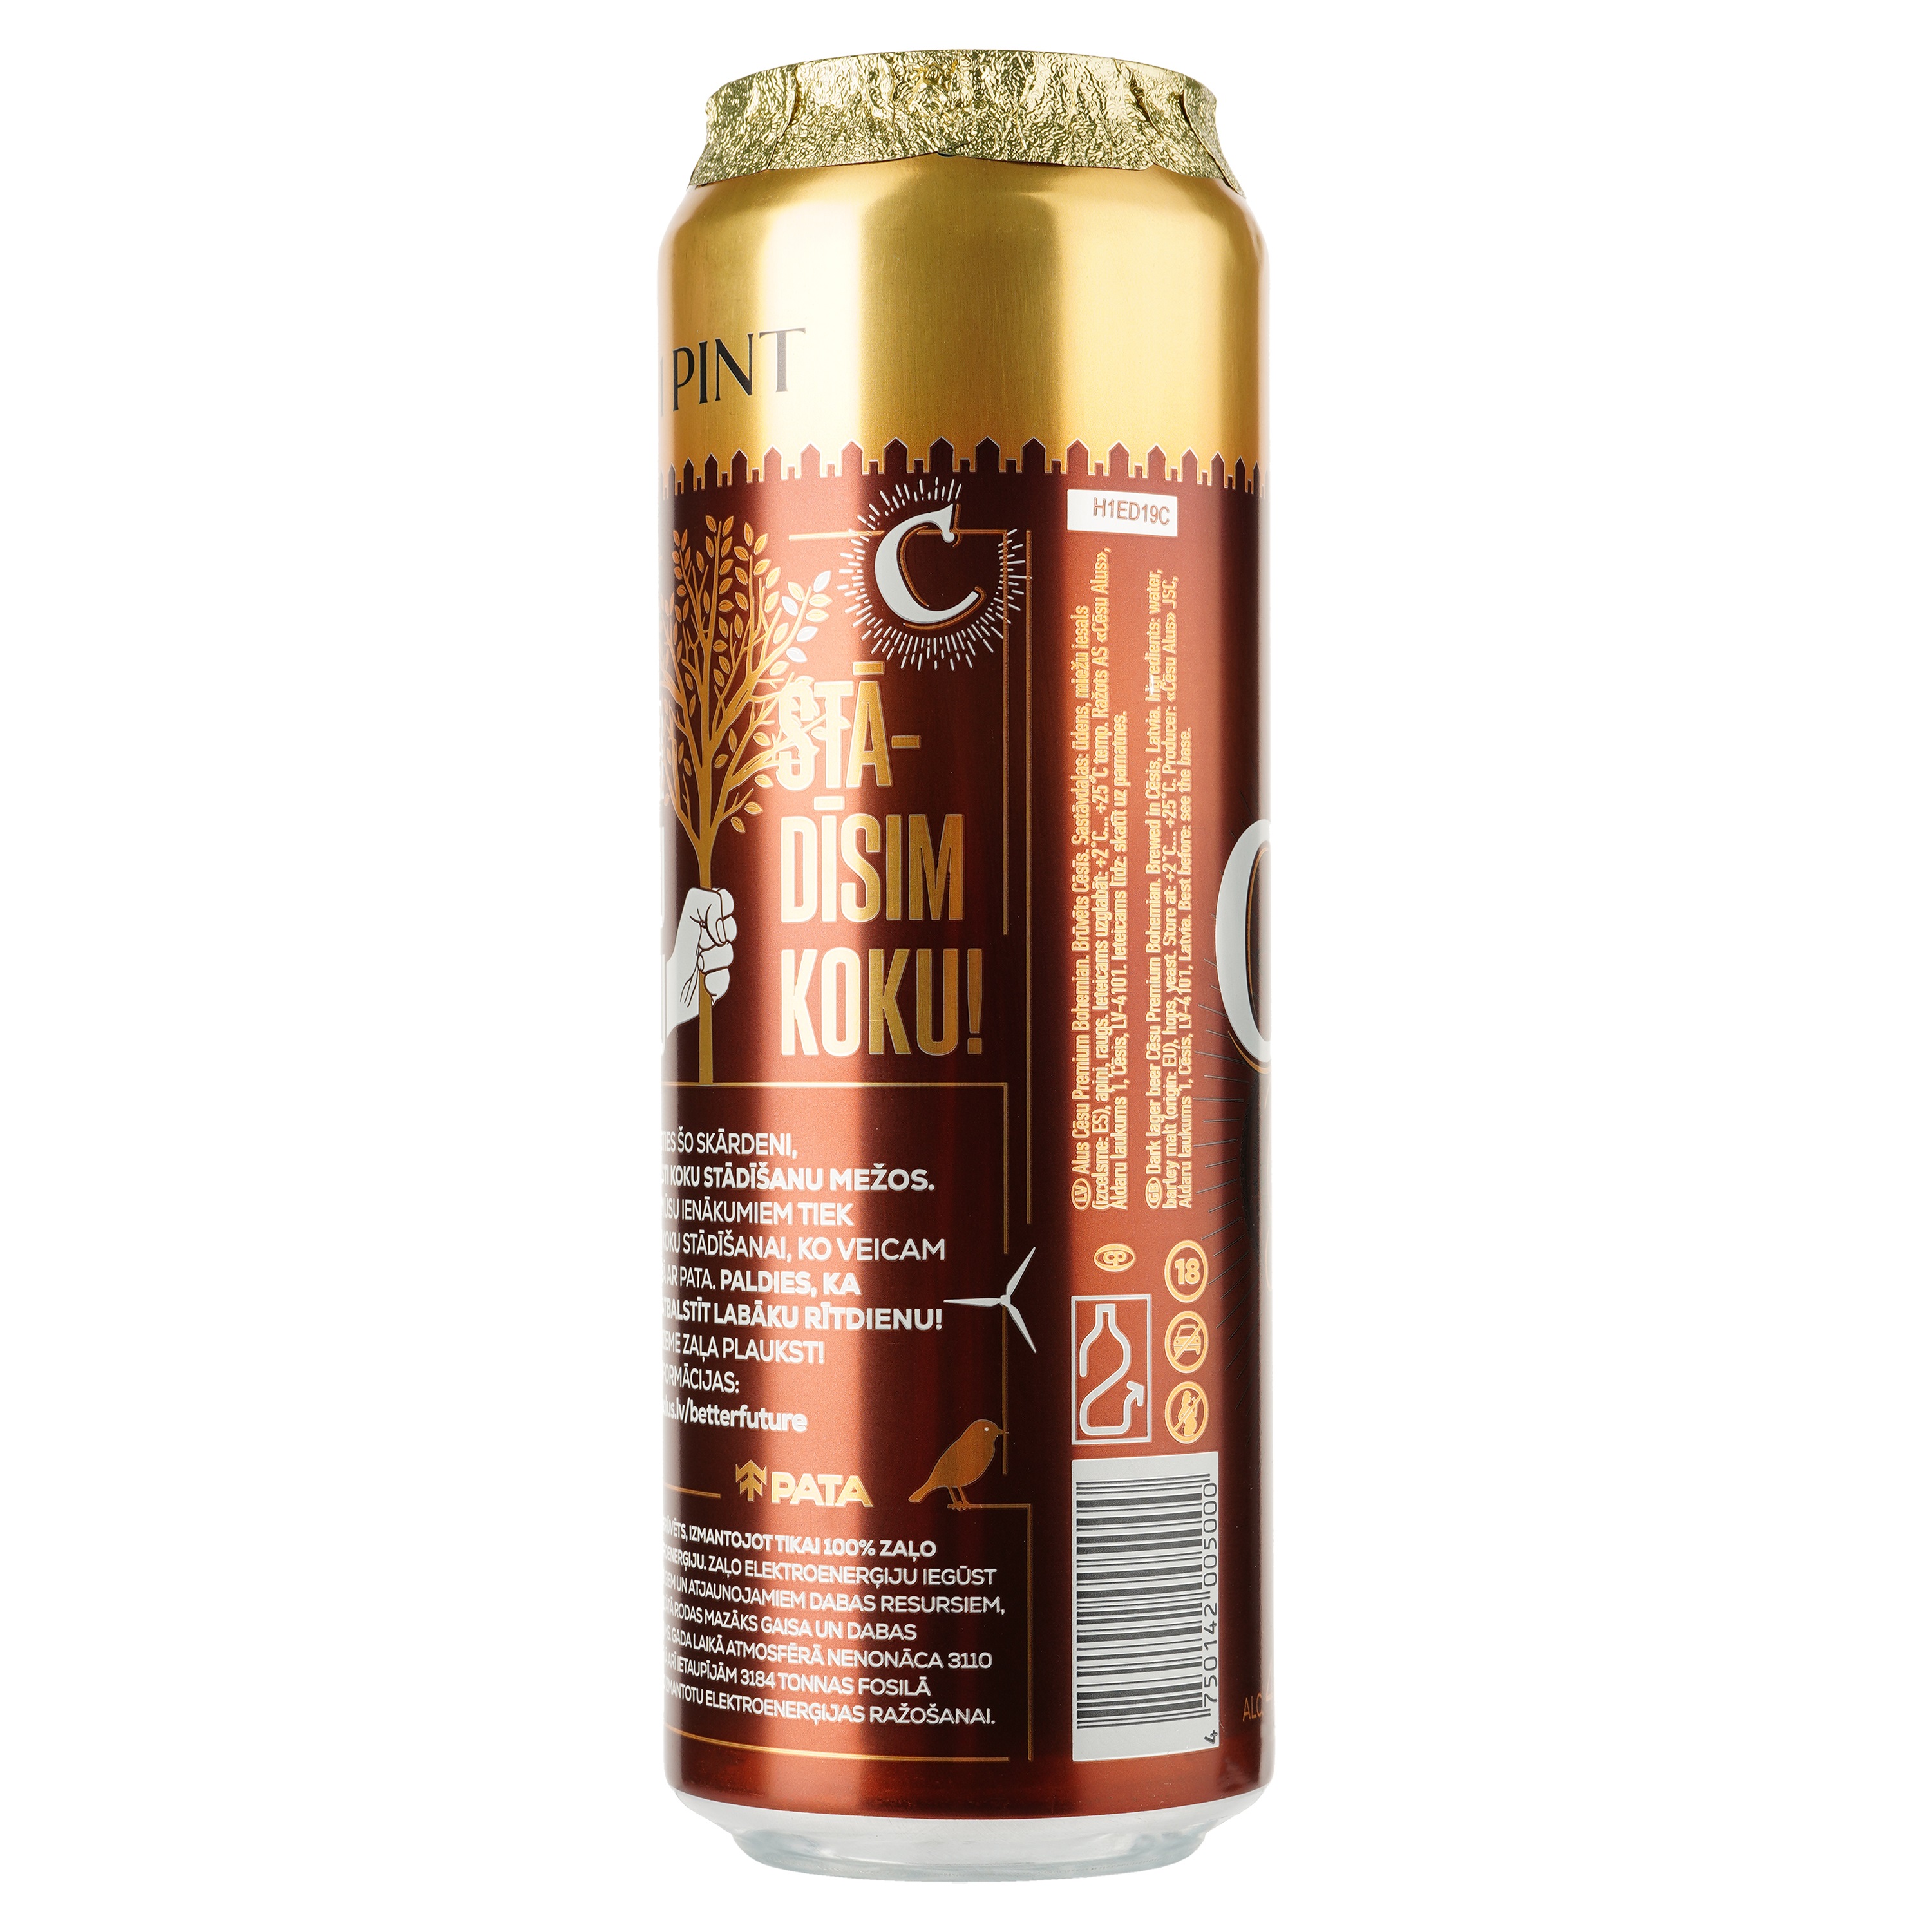 Пиво Cesu Premium Bohemian темное, фильтрованное, 4,5%, ж/б, 0,568 л - фото 3